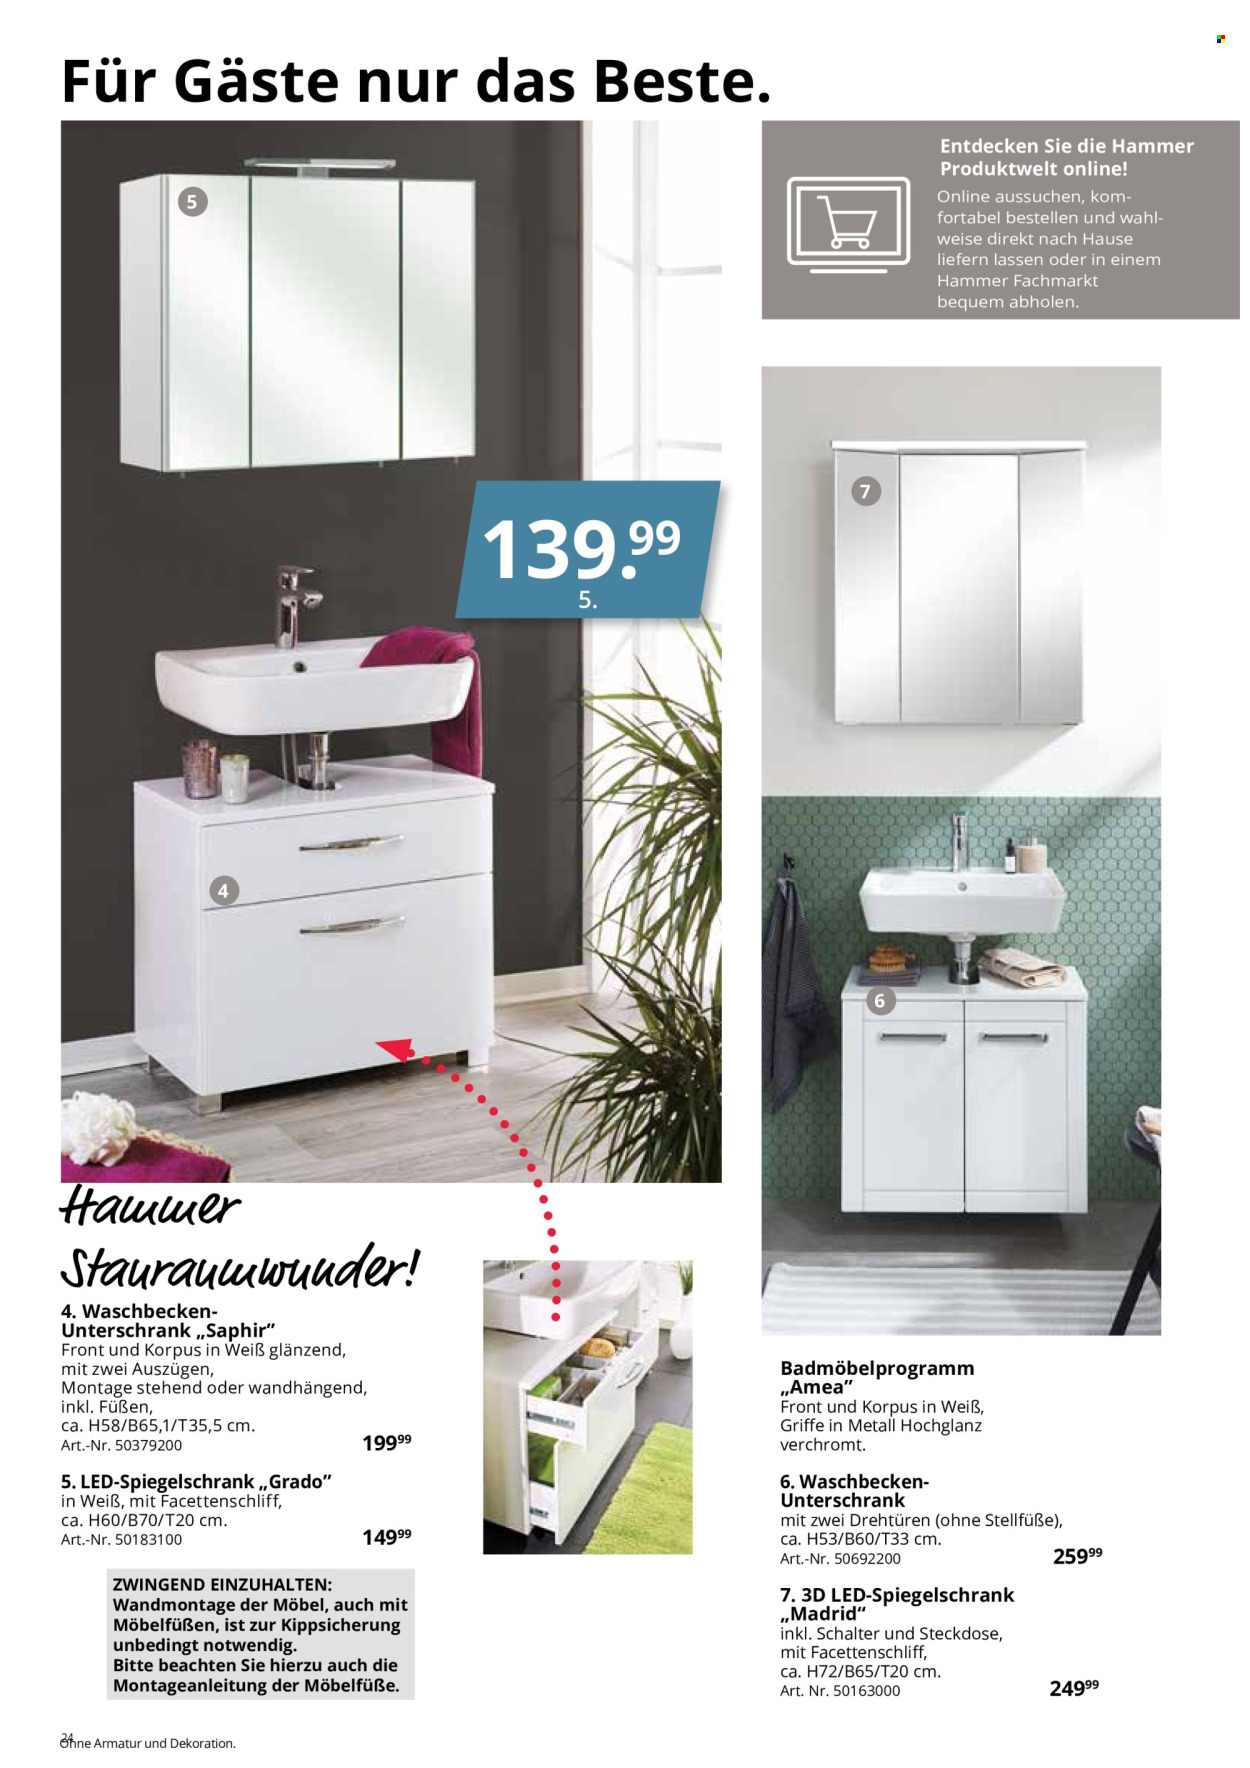 thumbnail - Prospekte Hammer - Produkte in Aktion - Waschbeckenunterschrank, Spiegelschrank, Bademöbel, Dekoration, Steckdose, Hammer. Seite 24.